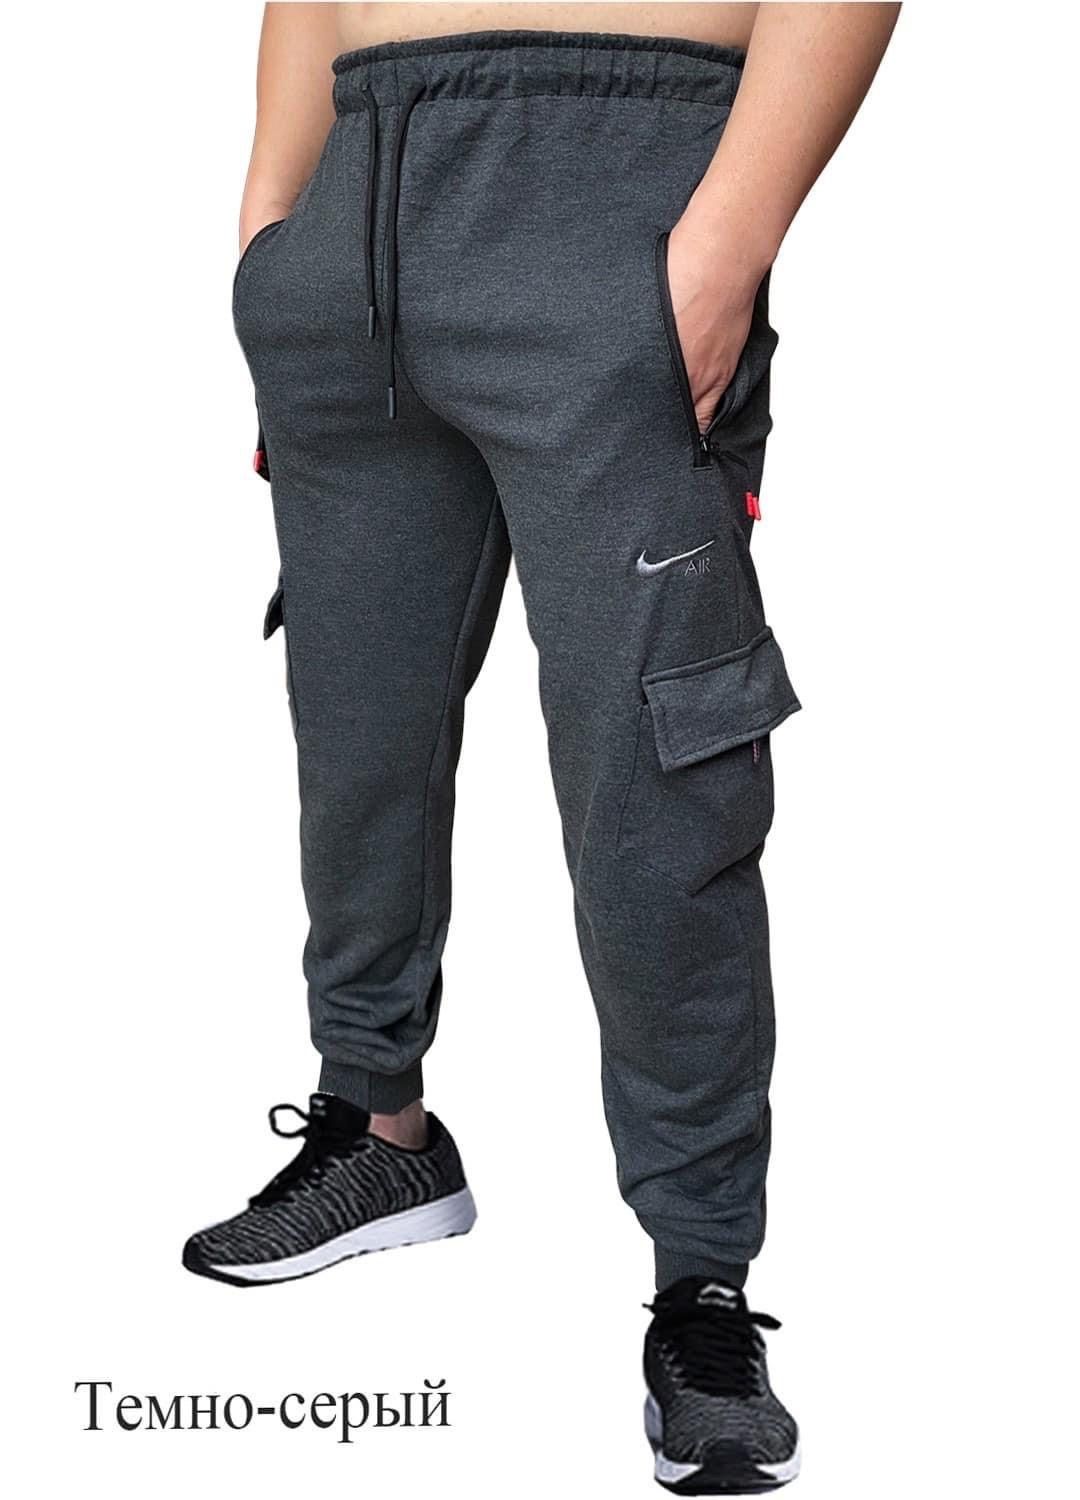 Чоловічі спортивні штани .Джогери Розміри  від 46 до 54